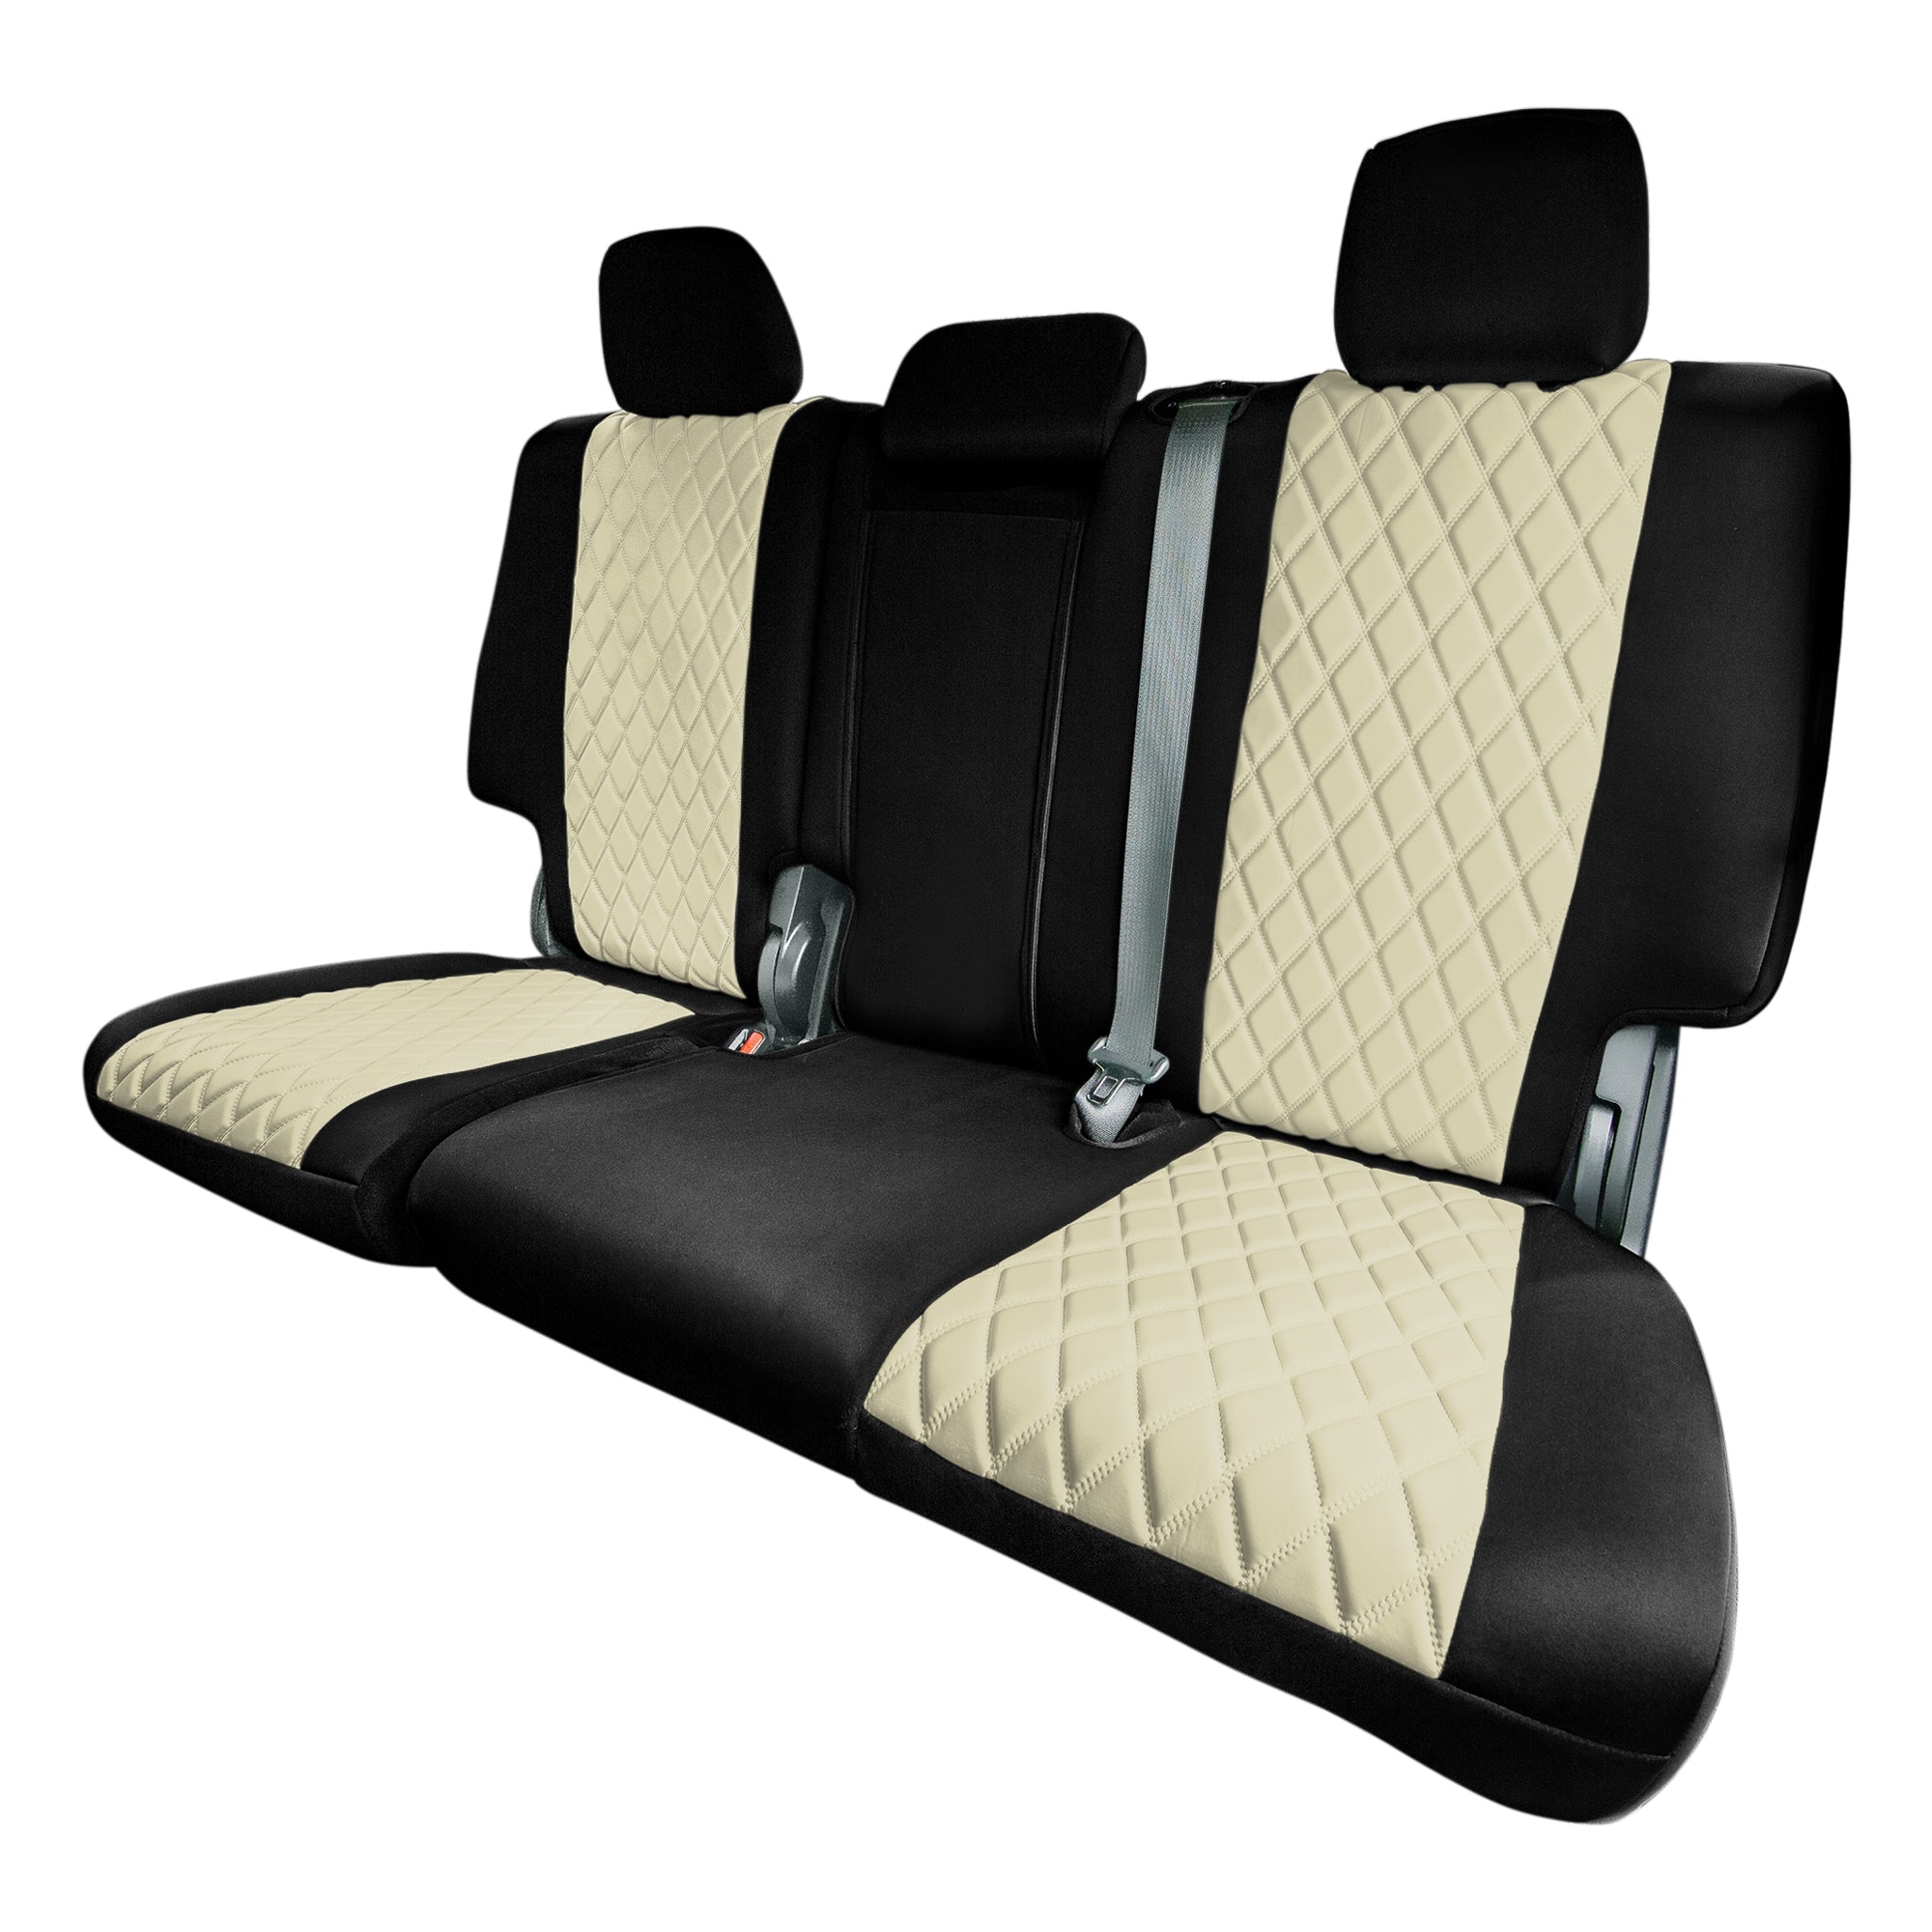 Jeep Grand Cherokee 2011 -2021 - Rear Set Seat Covers - Beige Ultraflex Neoprene